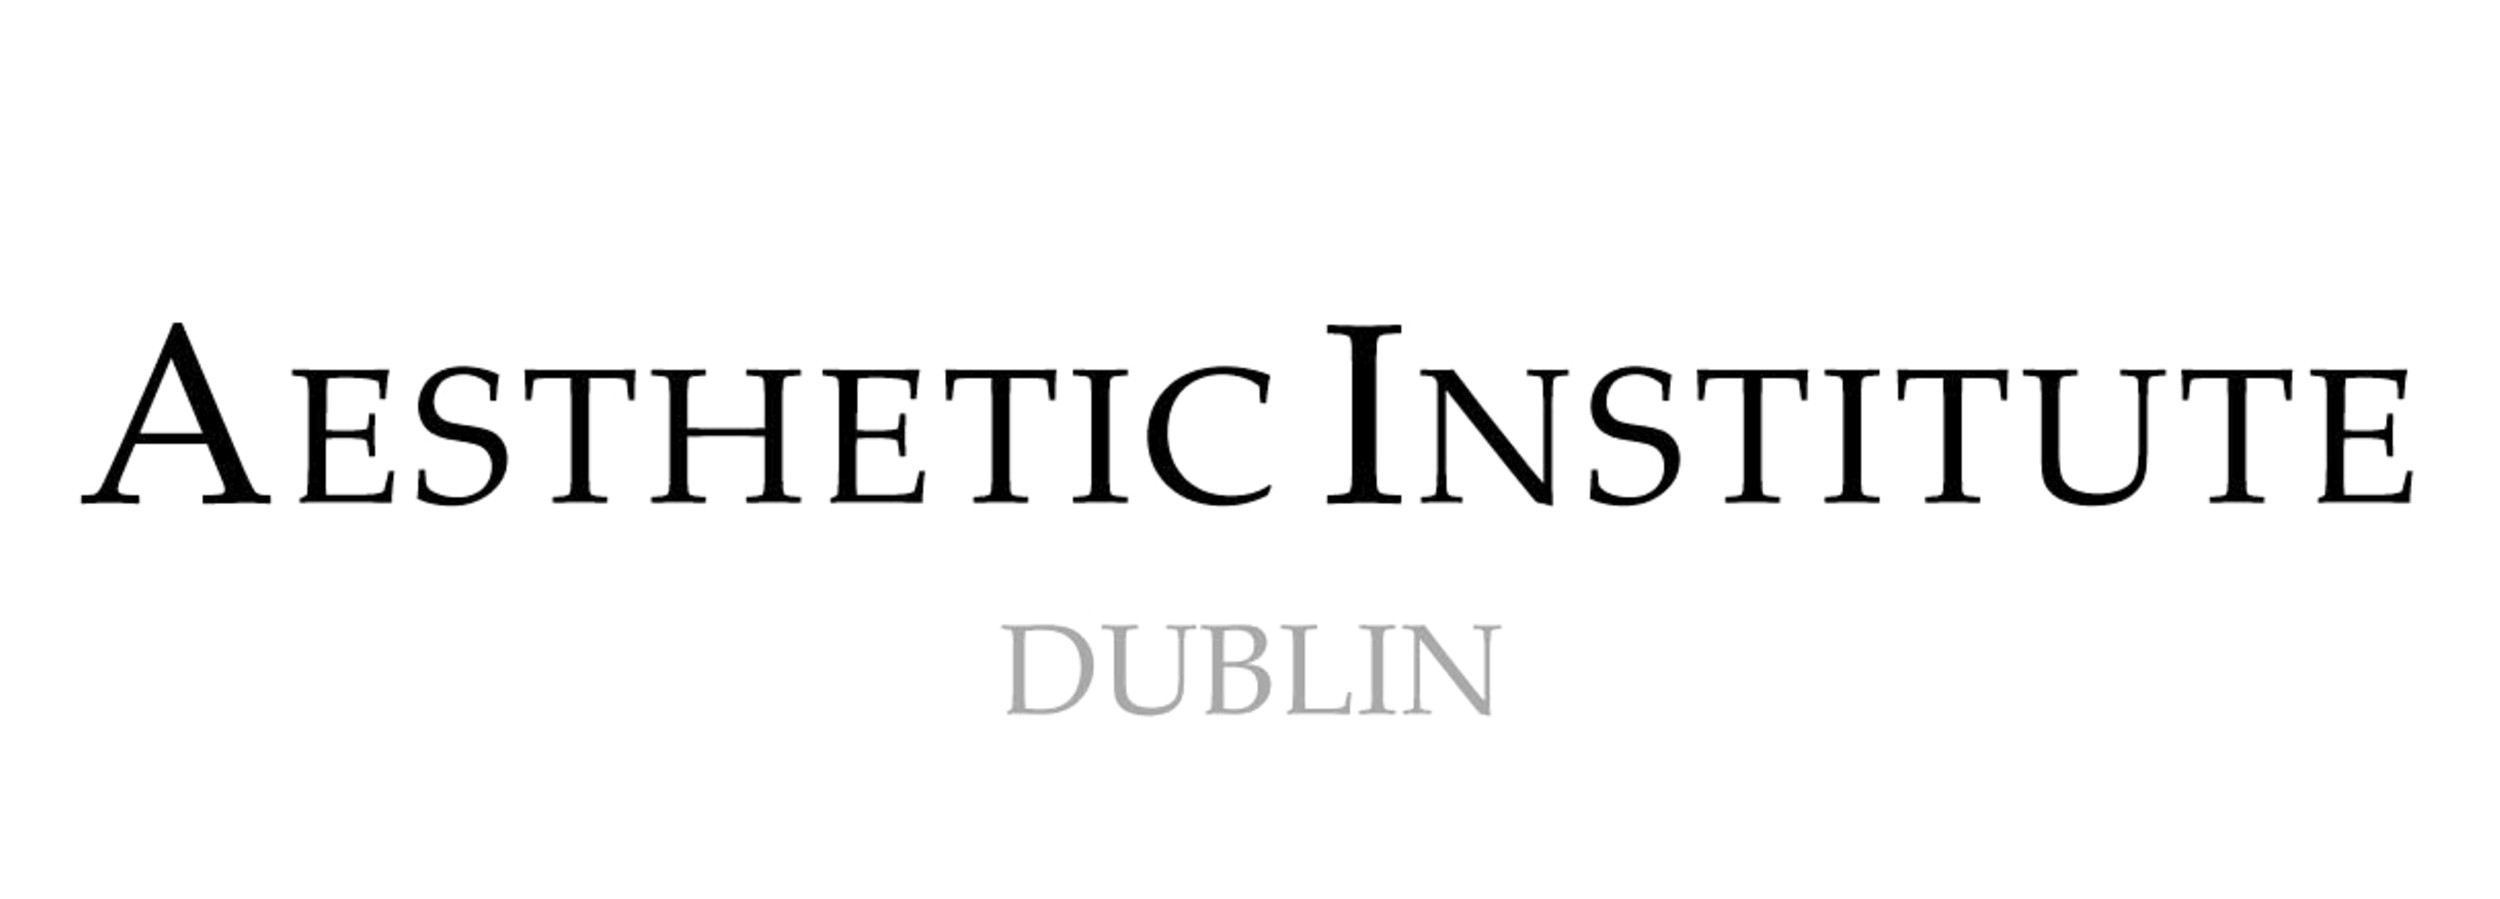 AESTHETIC INSTITUTE-dublin logo-reva